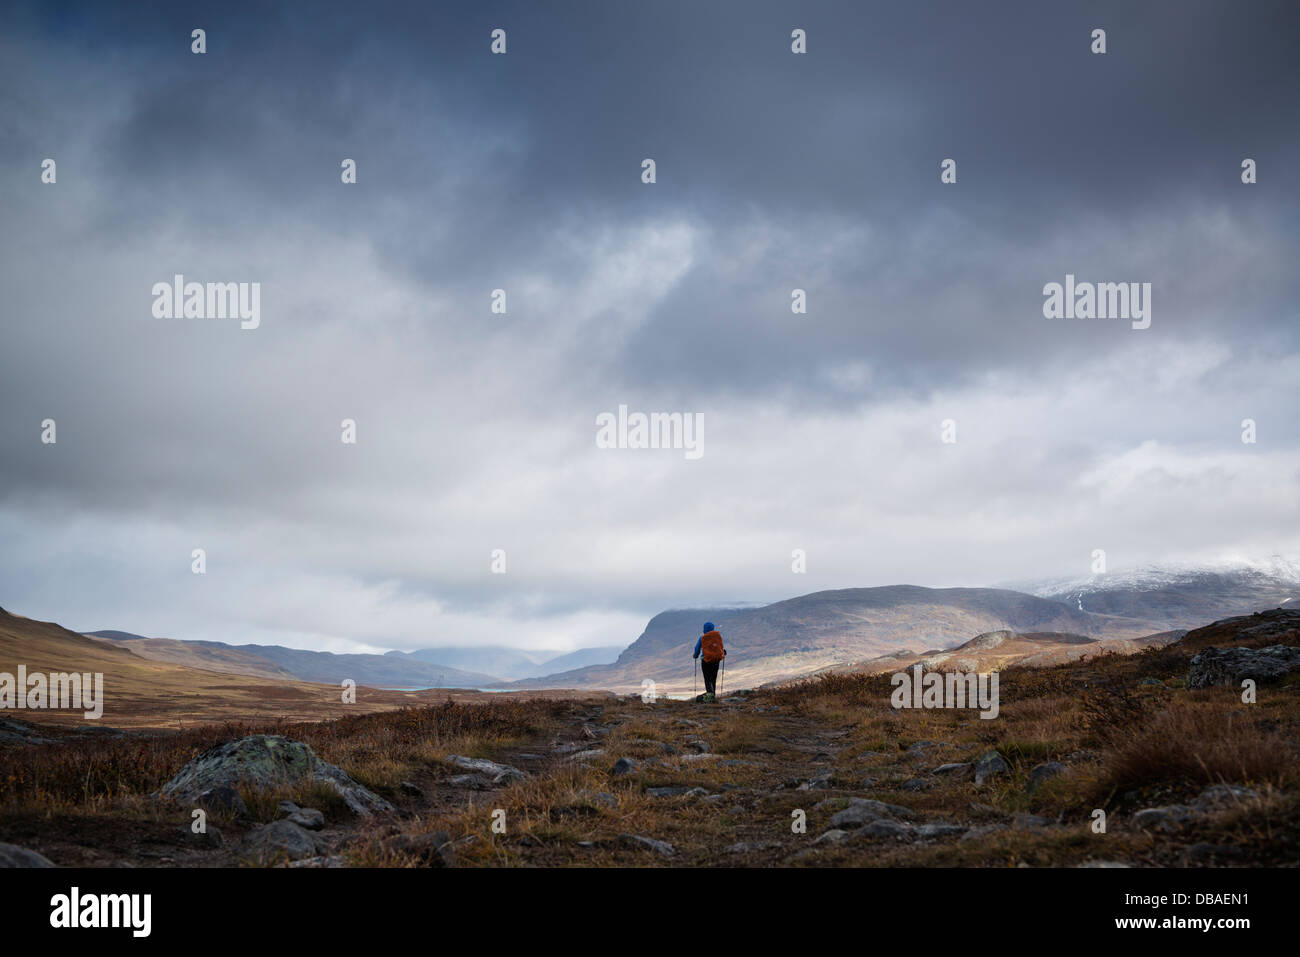 Silueta de mujer en Alisvagge caminante en busca del norte a lo largo Kungsleden trail, Laponia, Suecia Foto de stock